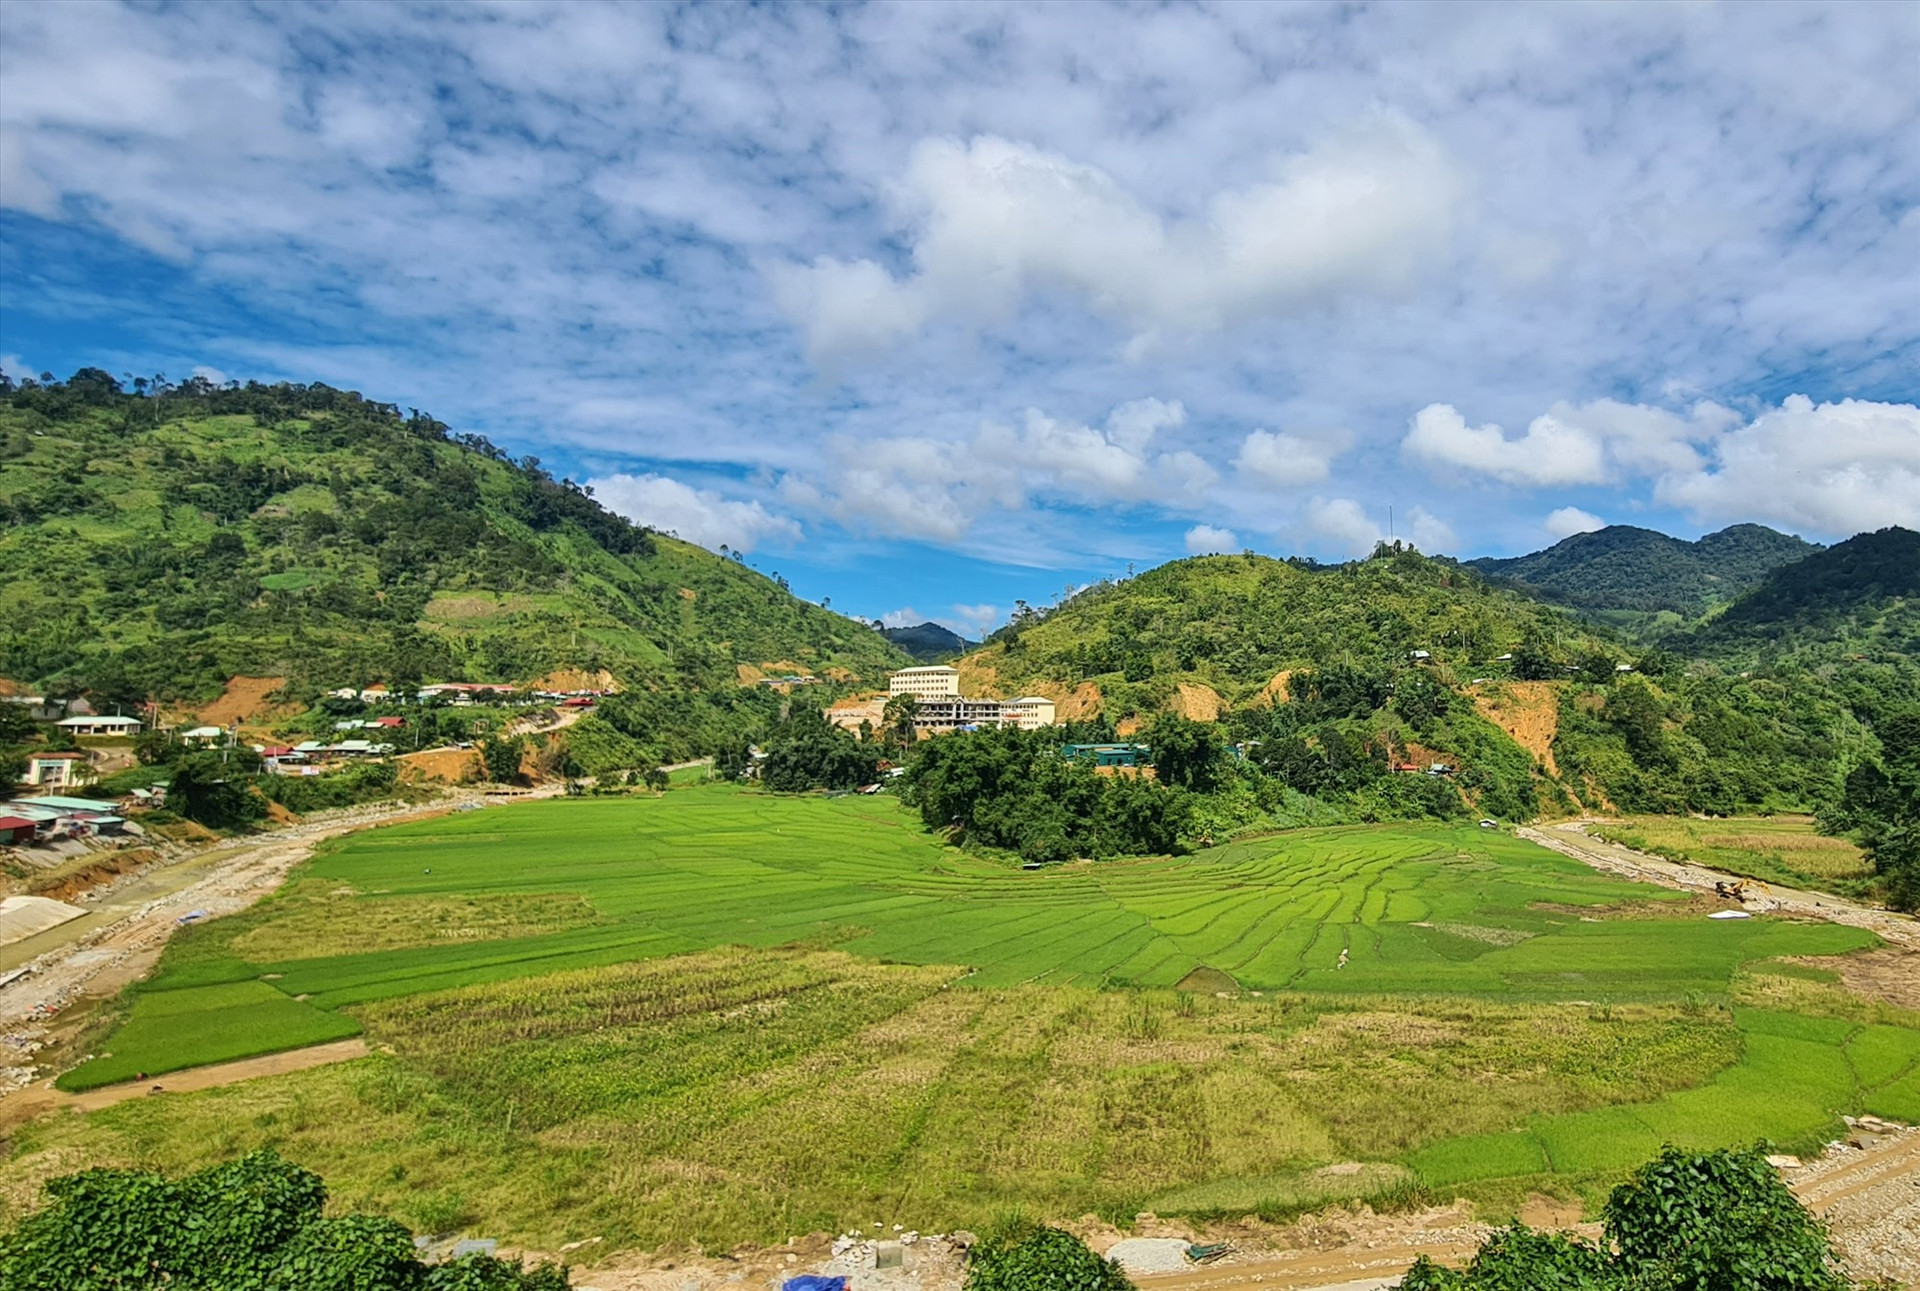 Cánh đồng Chuôr - ruộng lúa nước của cộng đồng Cơ Tu Tây Giang đang dần được khôi phục, đánh dấu sự trở lại bằng màu xanh của lúa.